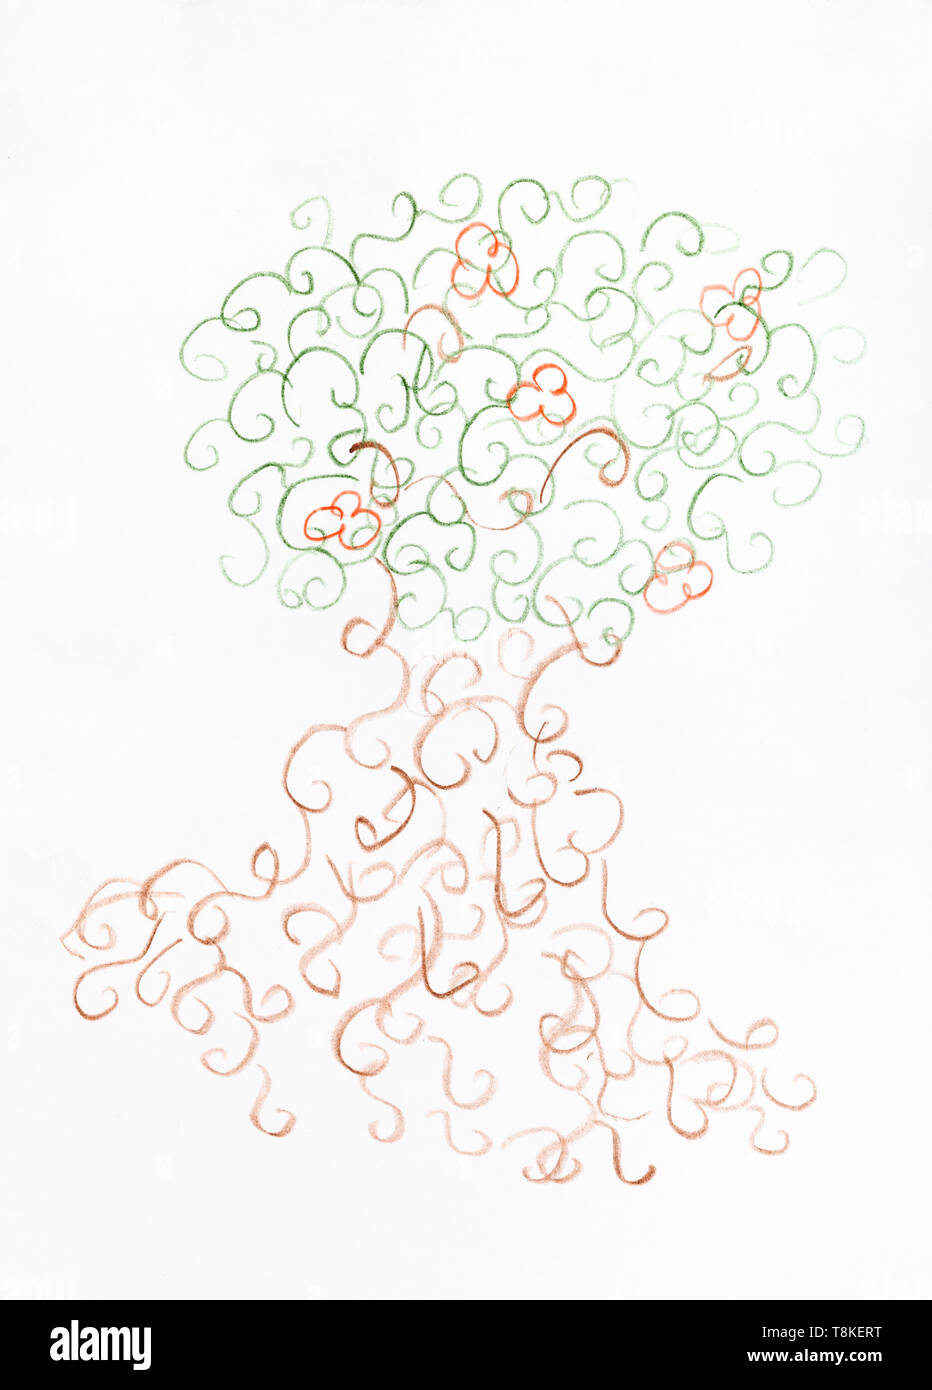 Arbre généalogique de fantaisie de gribouillis dessiné à la main par des crayons de couleur sur papier blanc Banque D'Images